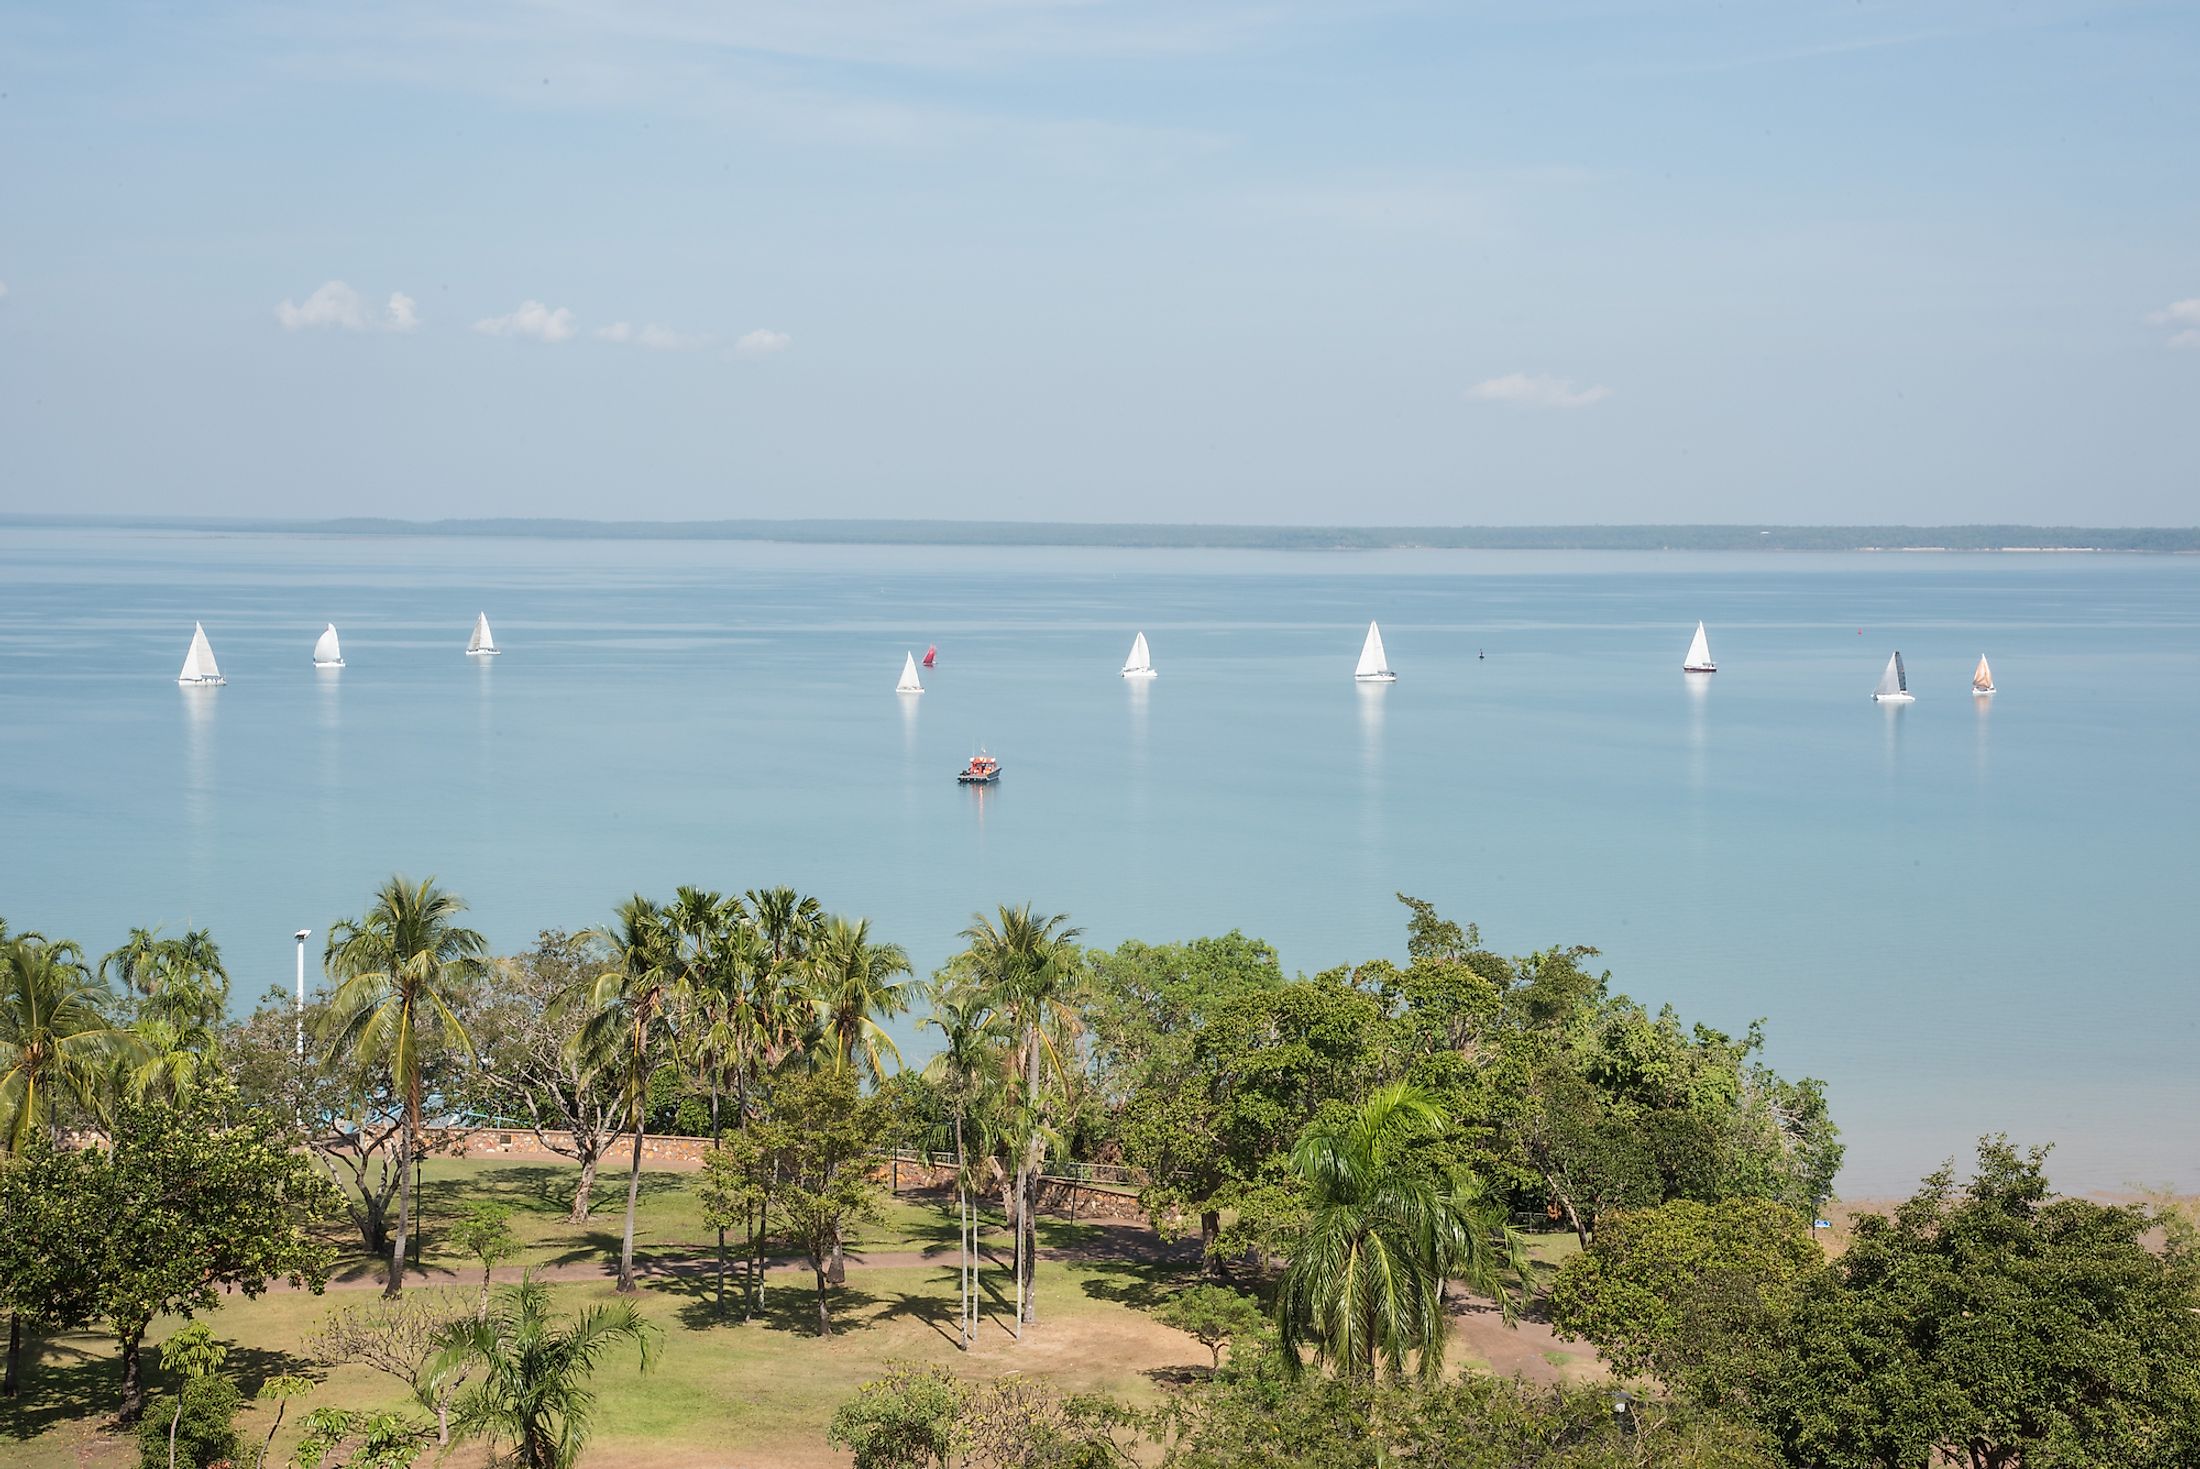 Sailboats in the Timor Sea in Darwin, Australia. Editorial credit: EA Given / Shutterstock.com